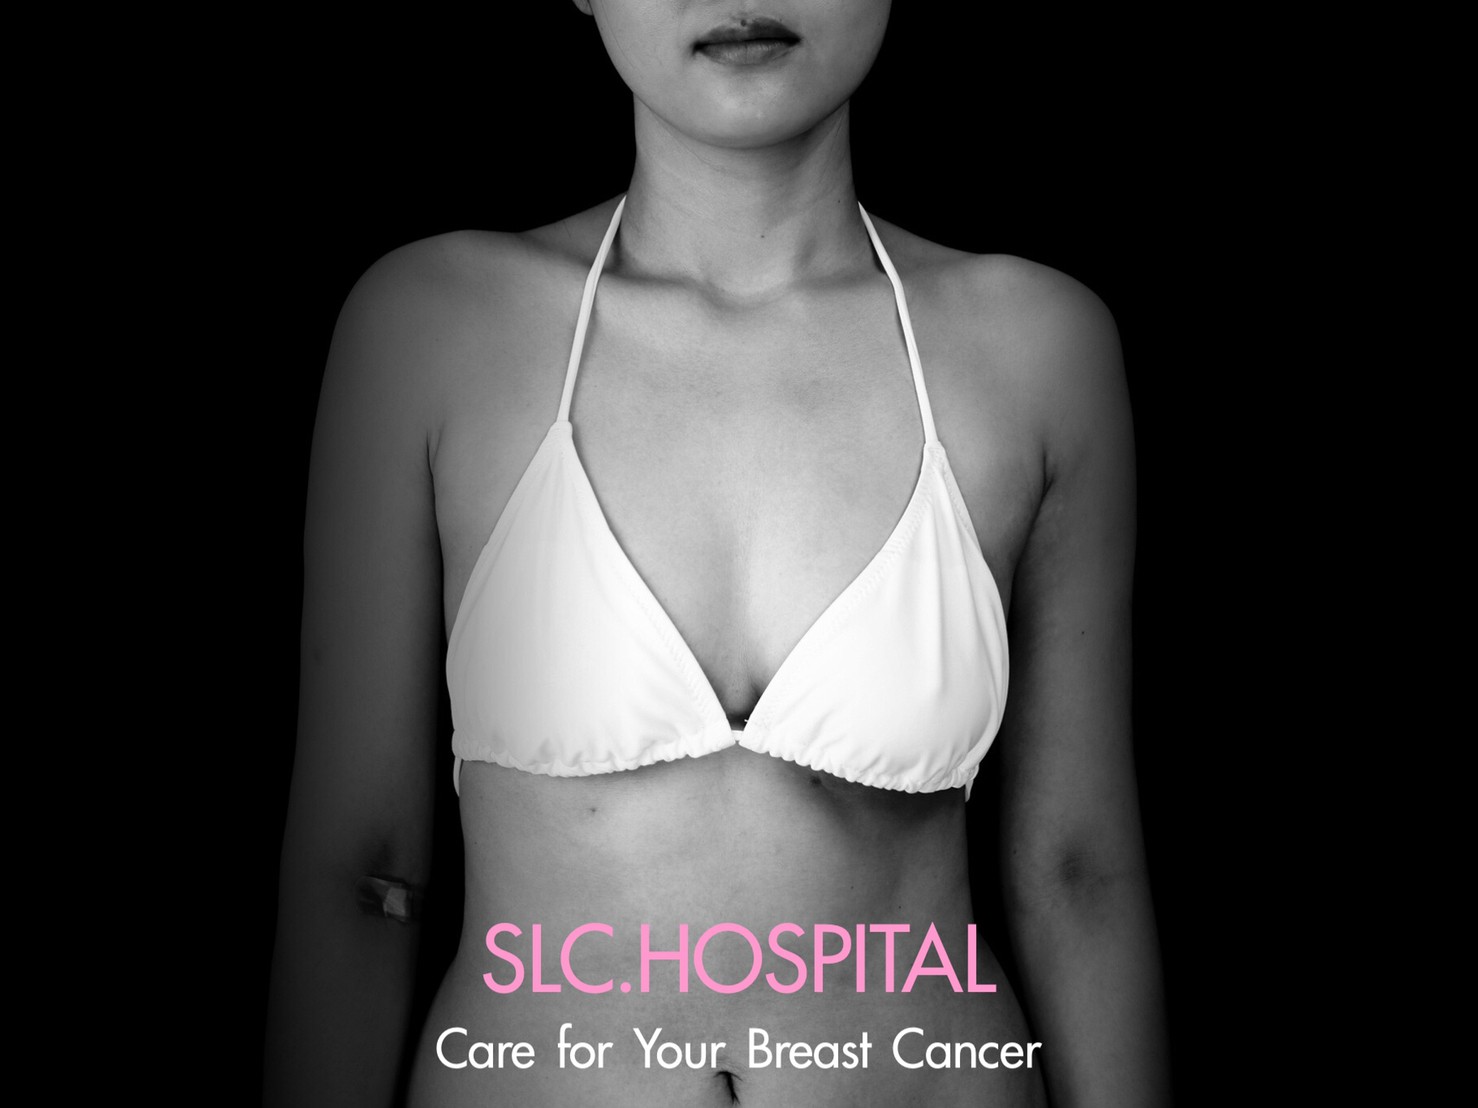 มะเร็งเต้านม ผ่าตัดมะเร็งเต้านม ผ่าตัดนมมะเร็ง โรคมะเร็งเต้านม